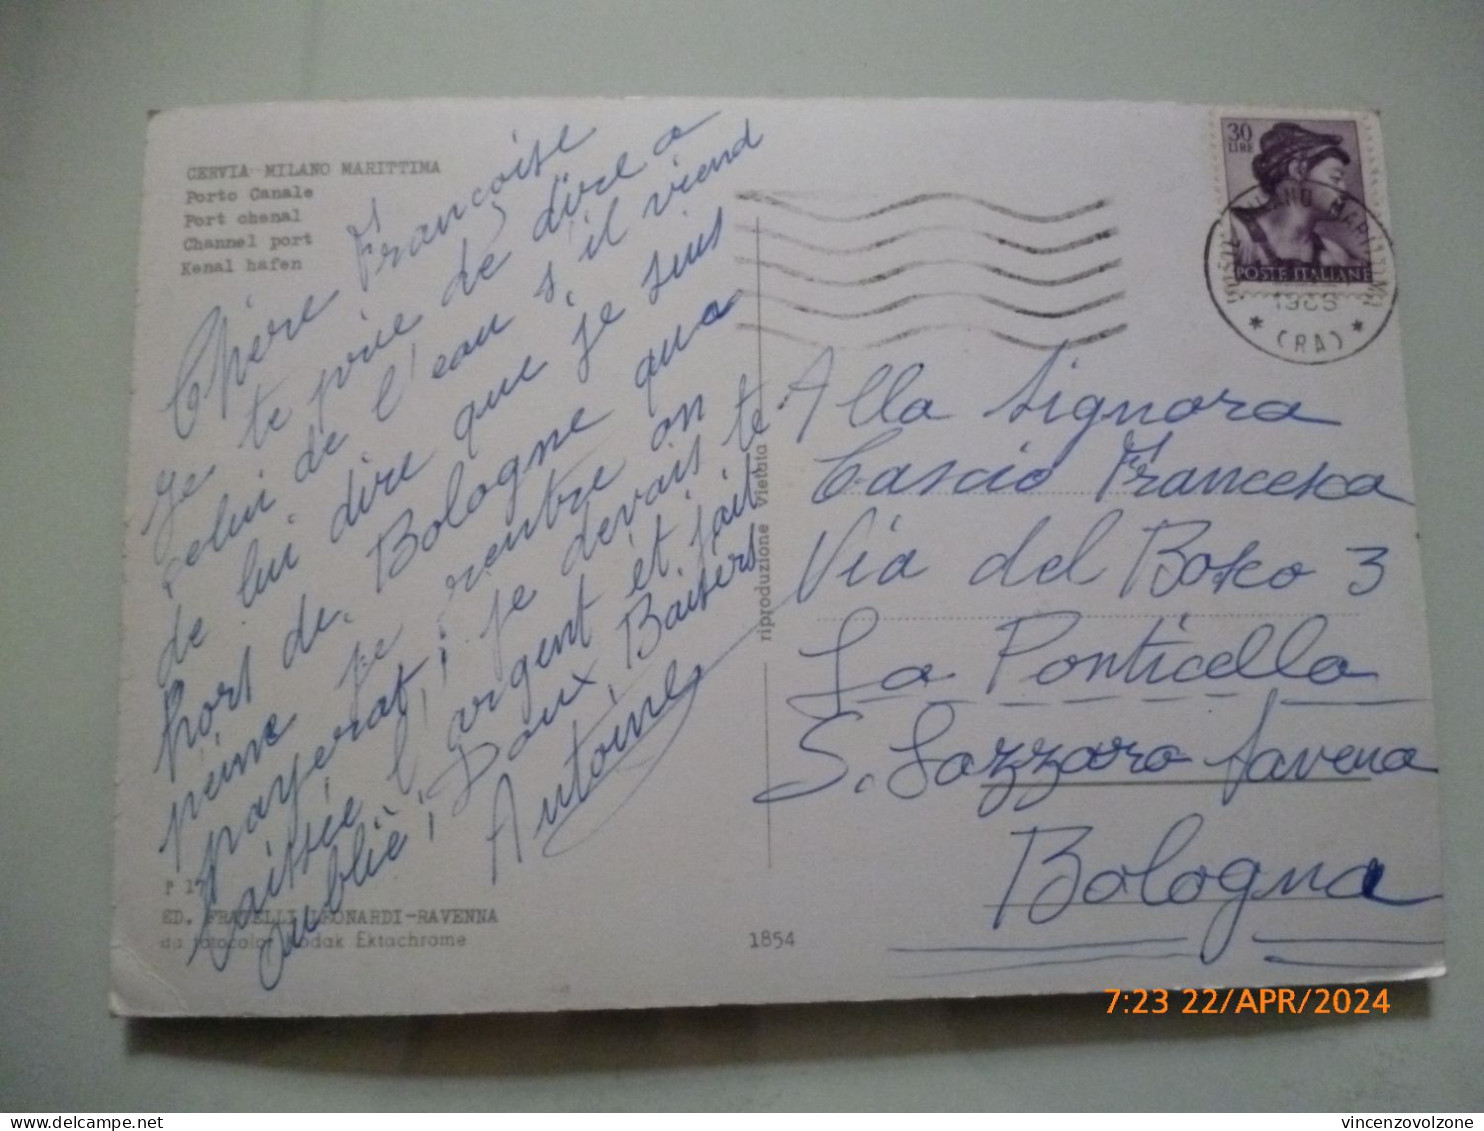 Cartolina Viaggiata "MILANO MARITTIMA CERVIA Porto Canale" 1964 - Ravenna